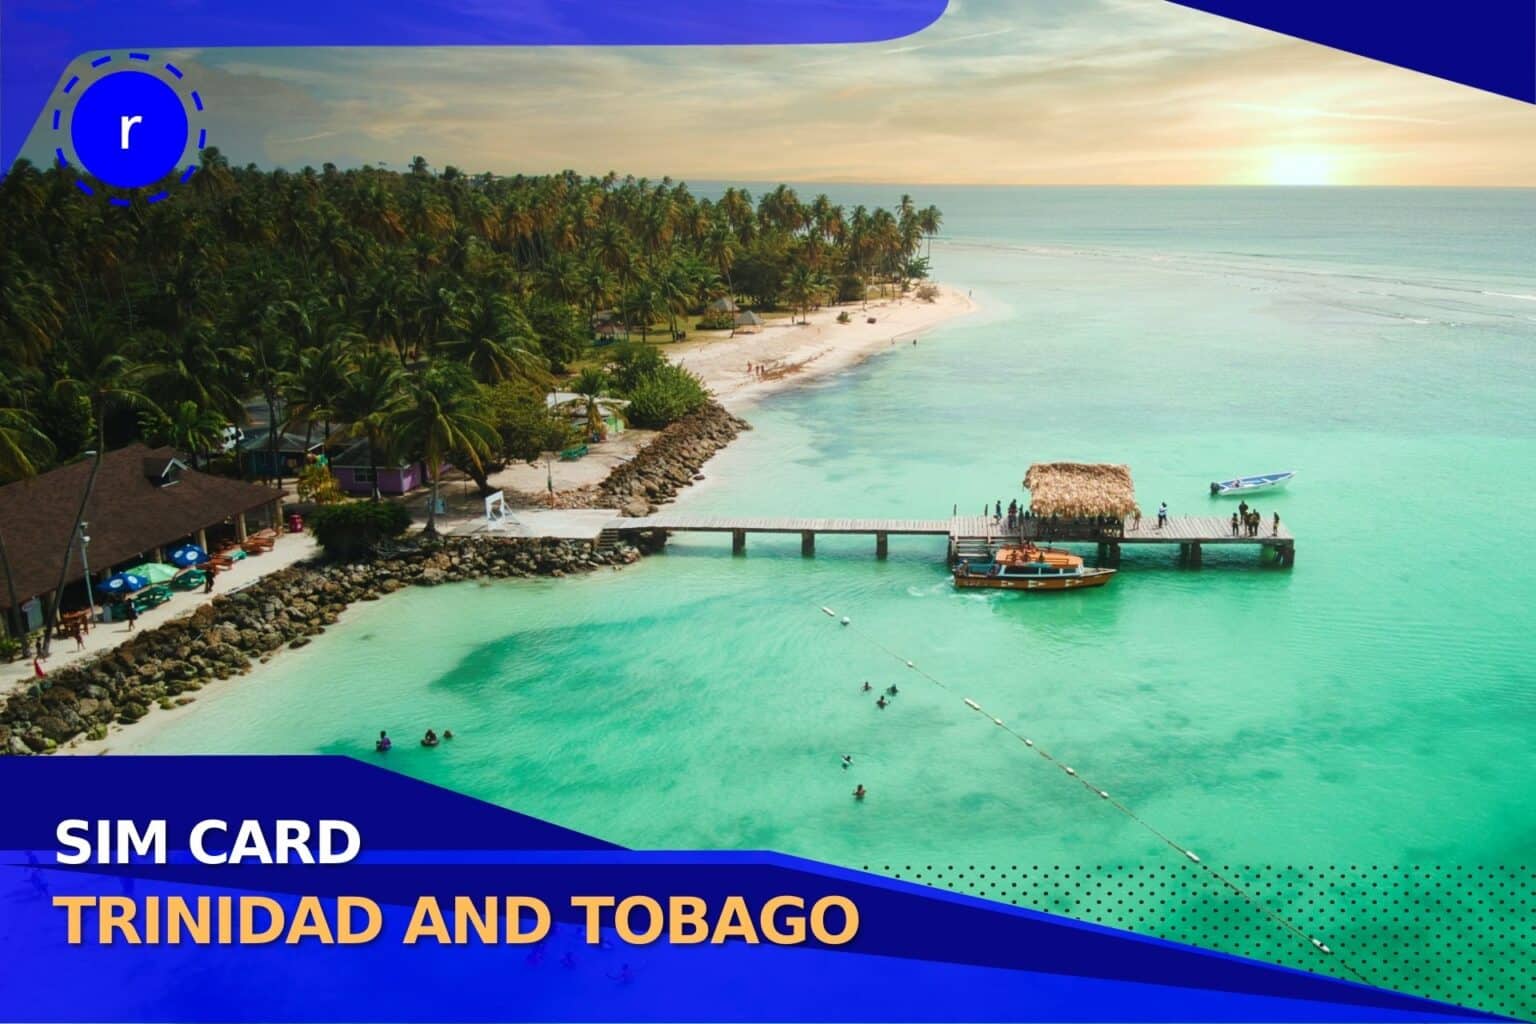 Sim Card Trinidad And Tobago 1536x1024 